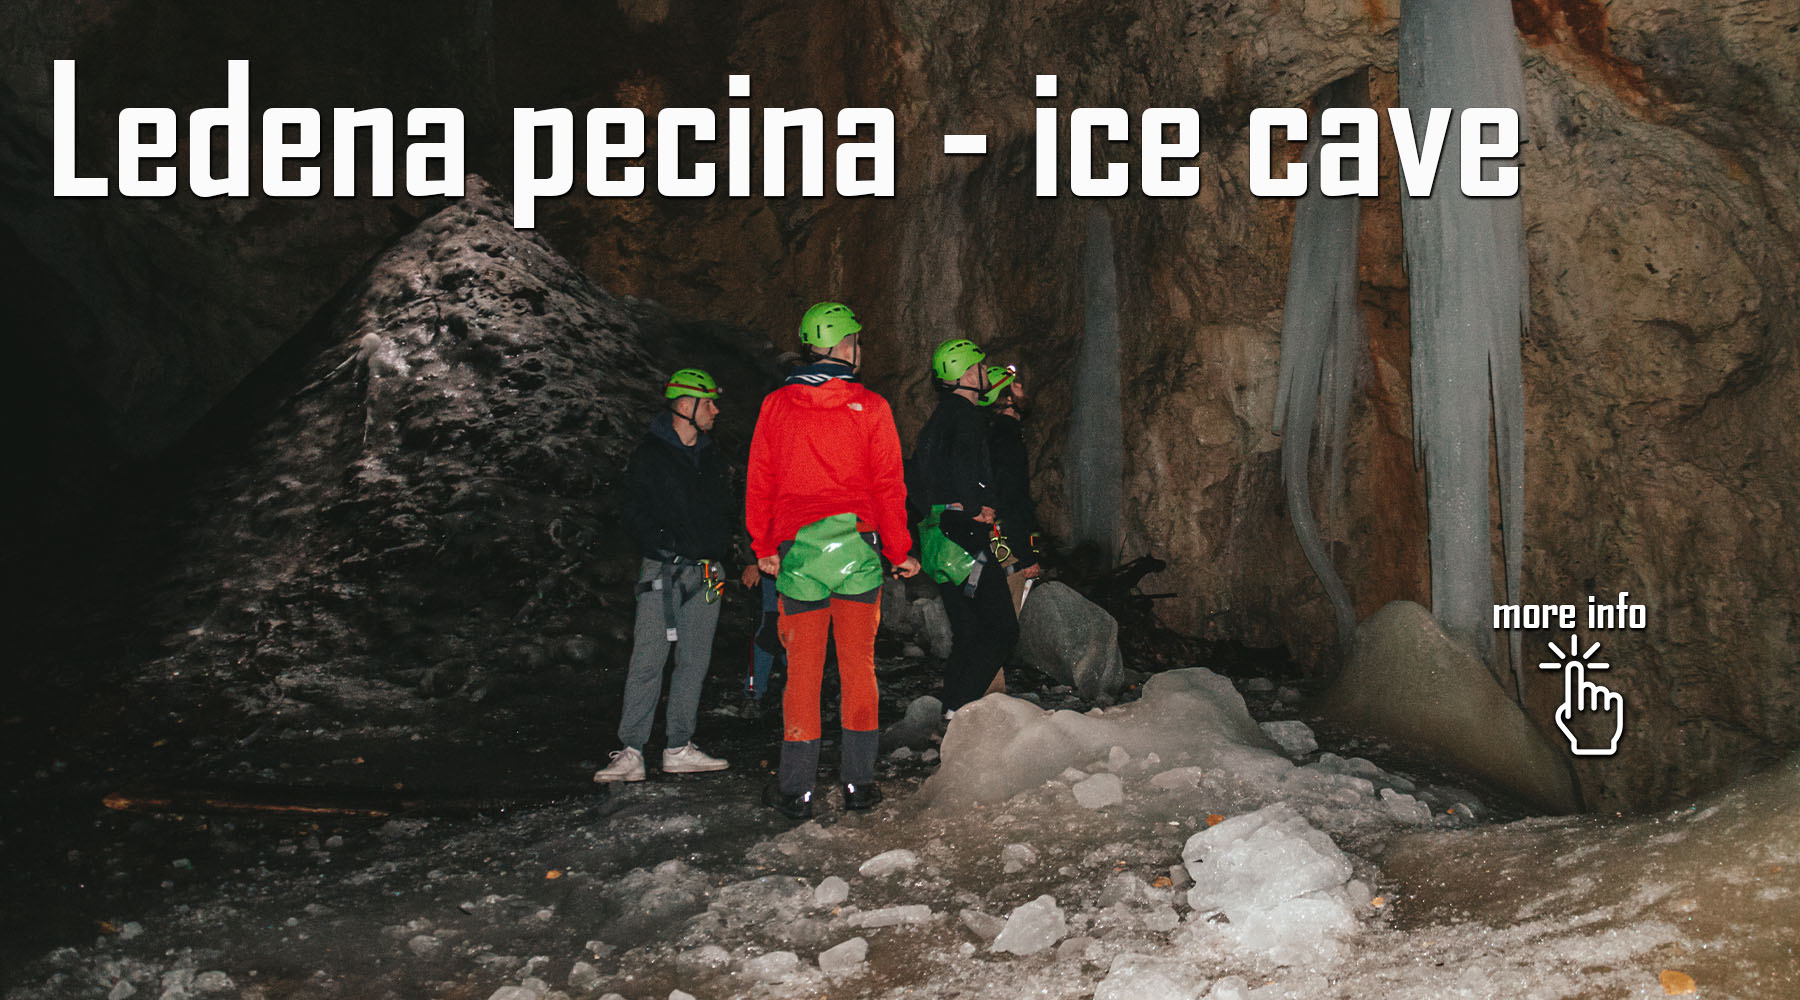 Ledena pećina/jama u Priboju